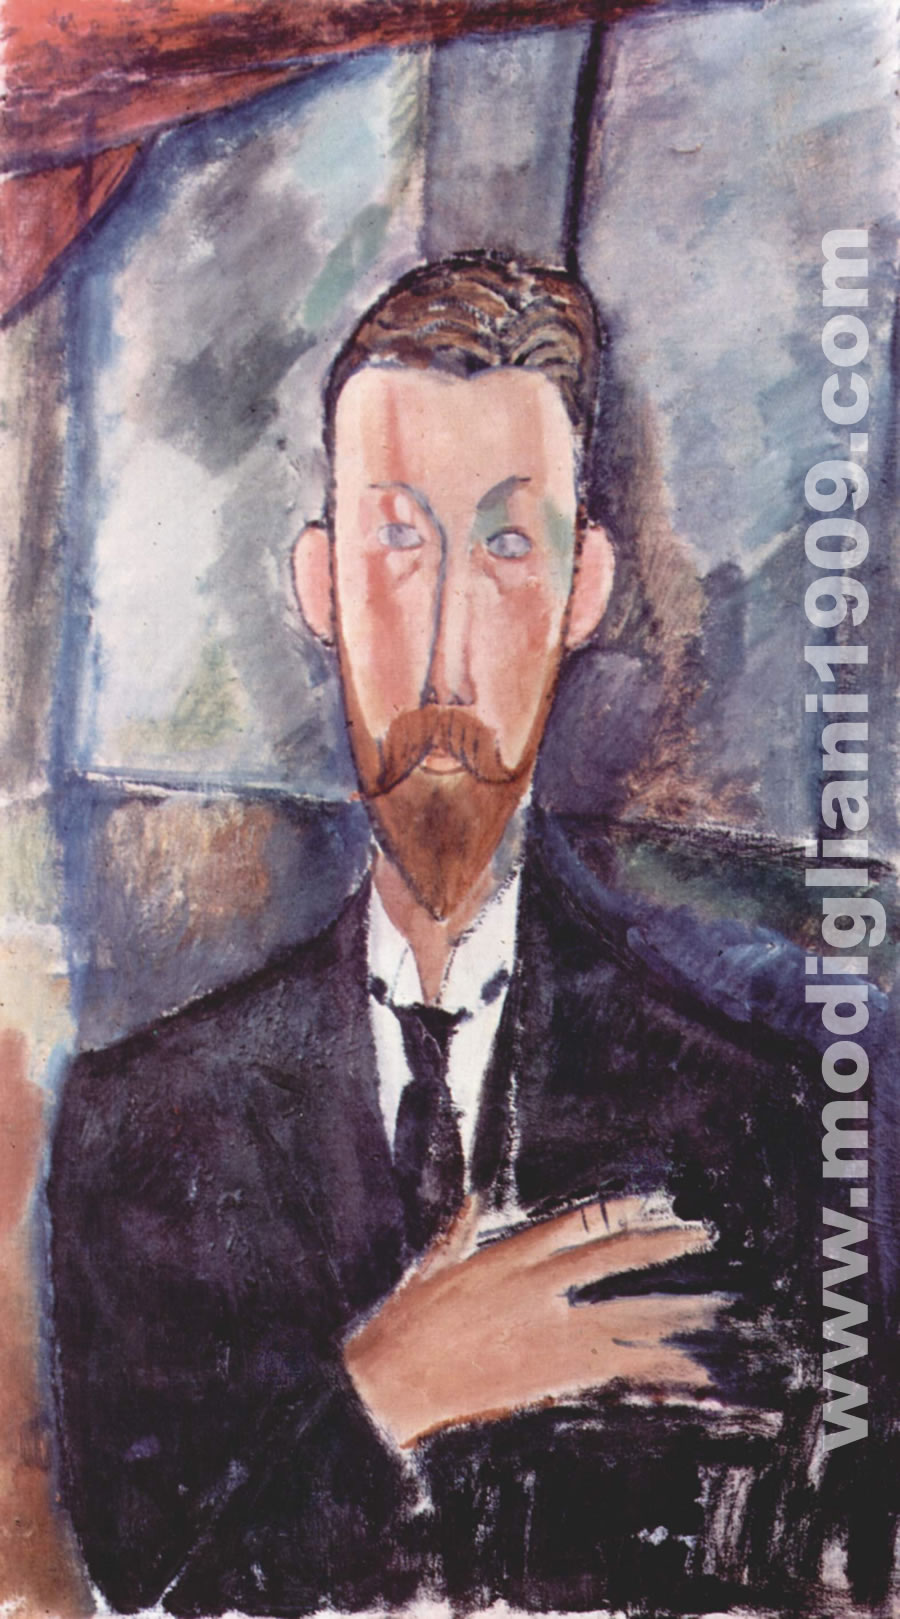 alla prima catalogazione fu citato come ritratto di Paul Alexandre davanti a una vetrata. Contrariamente agli altri ritratti eseguiti all'amico Paul, Modigliani dipinse questo senza pose. E' il primo ritratto che ricorda, per l'allungamento, le teste scolpite dall'artista.